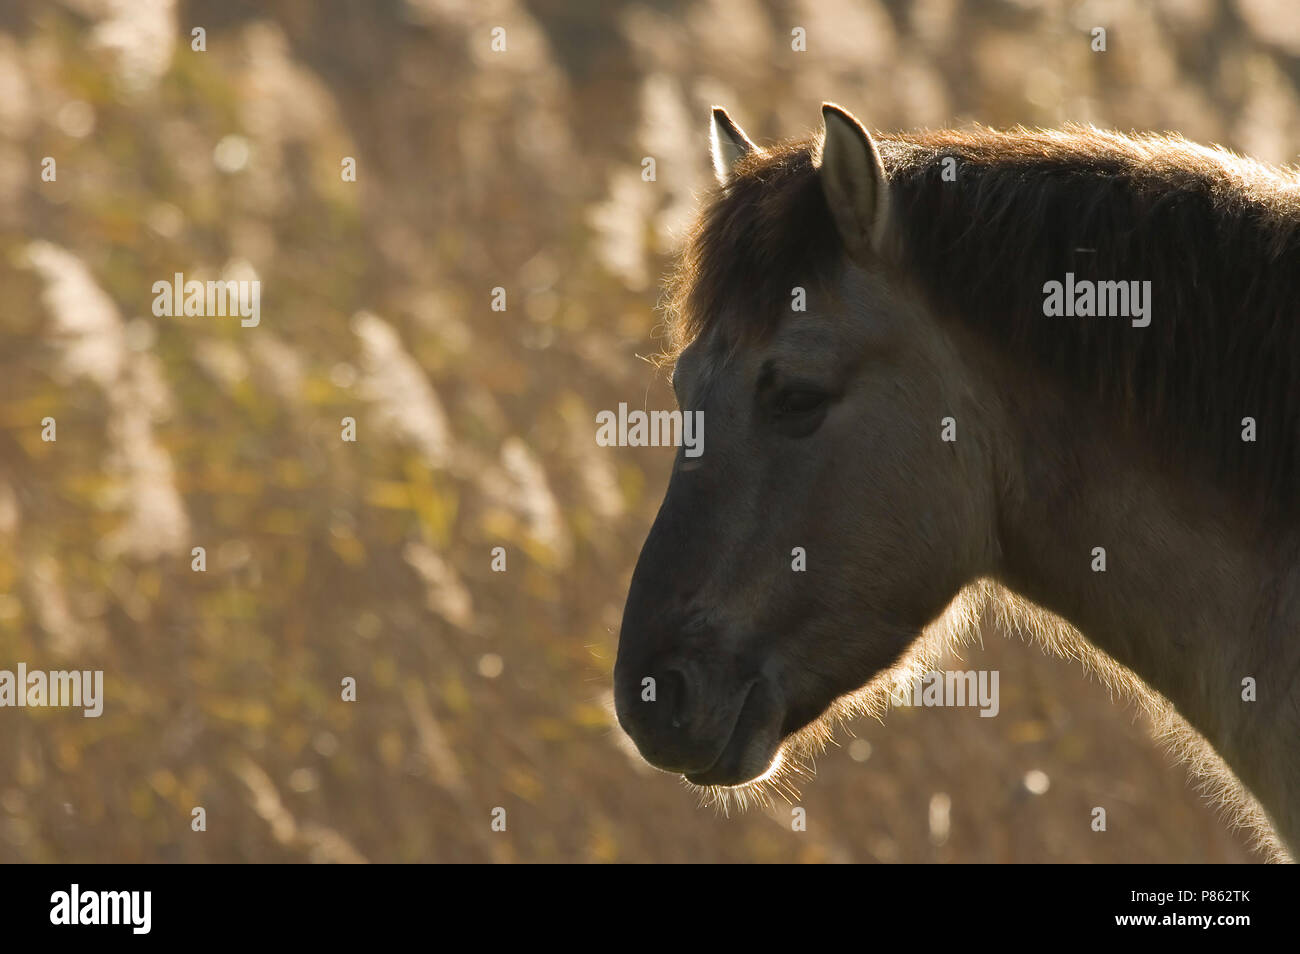 Konikpaard als Grazer in Natuurgebied; wilde Pferd als Grazer im Naturschutzgebiet Stockfoto